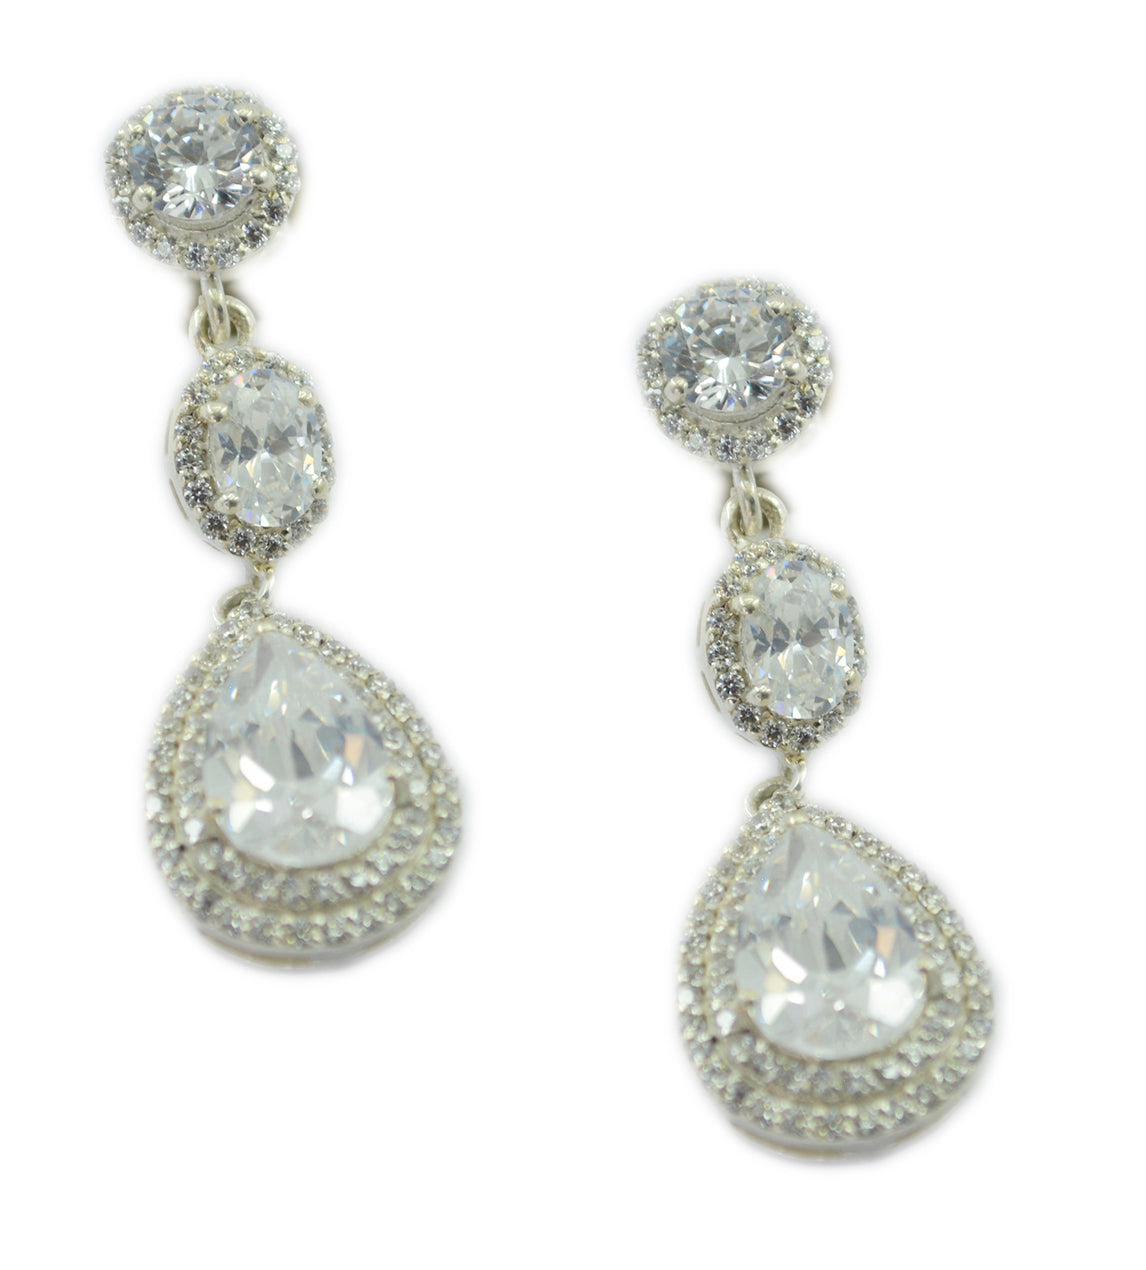 Riyo Nice Gemstone multi shape Faceted White White CZ Silver Earrings gift for mom